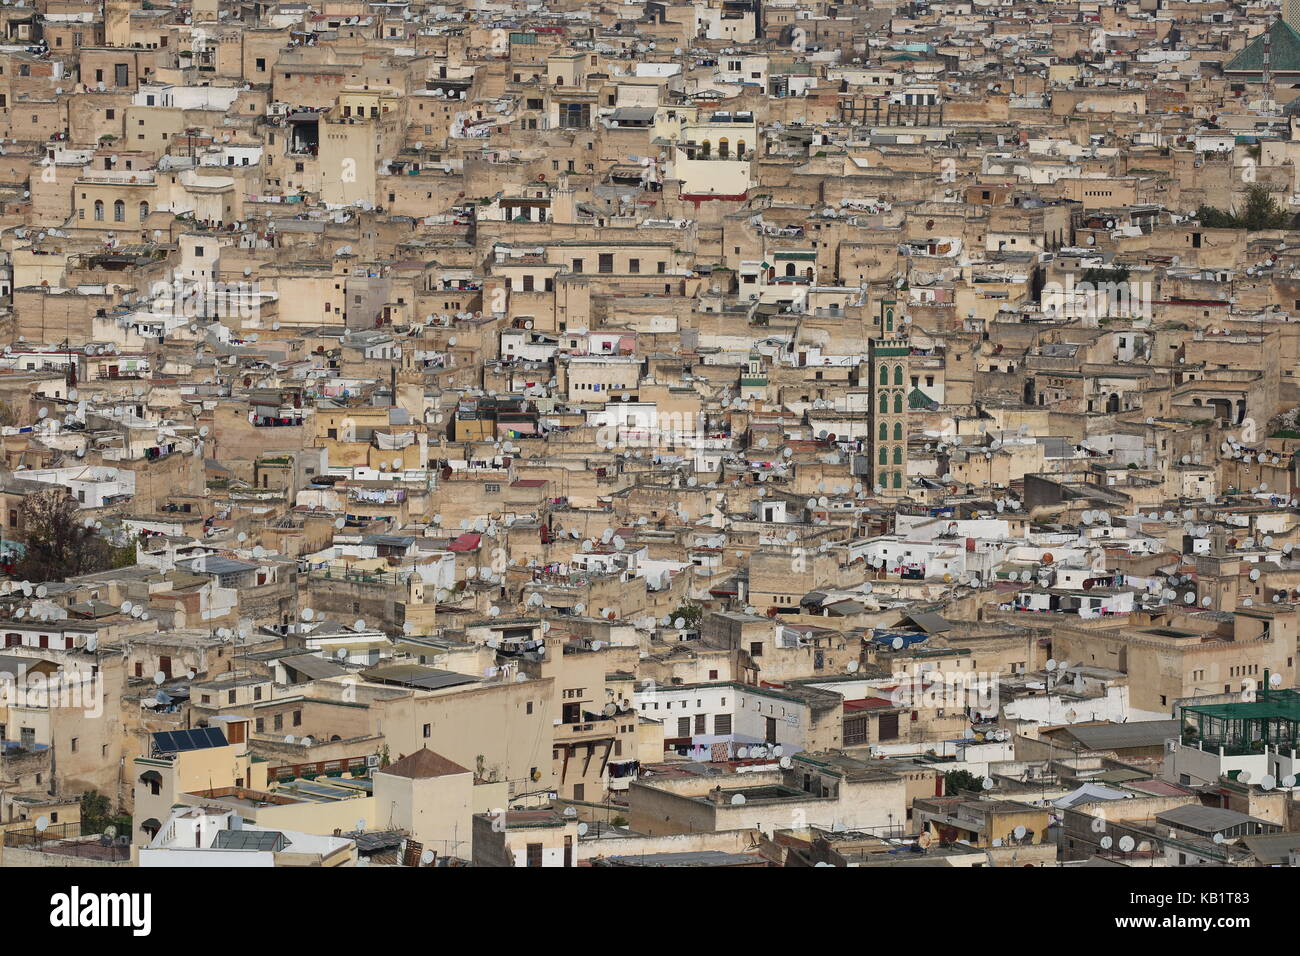 Marokko - marocco - Fes City from hill Stock Photo